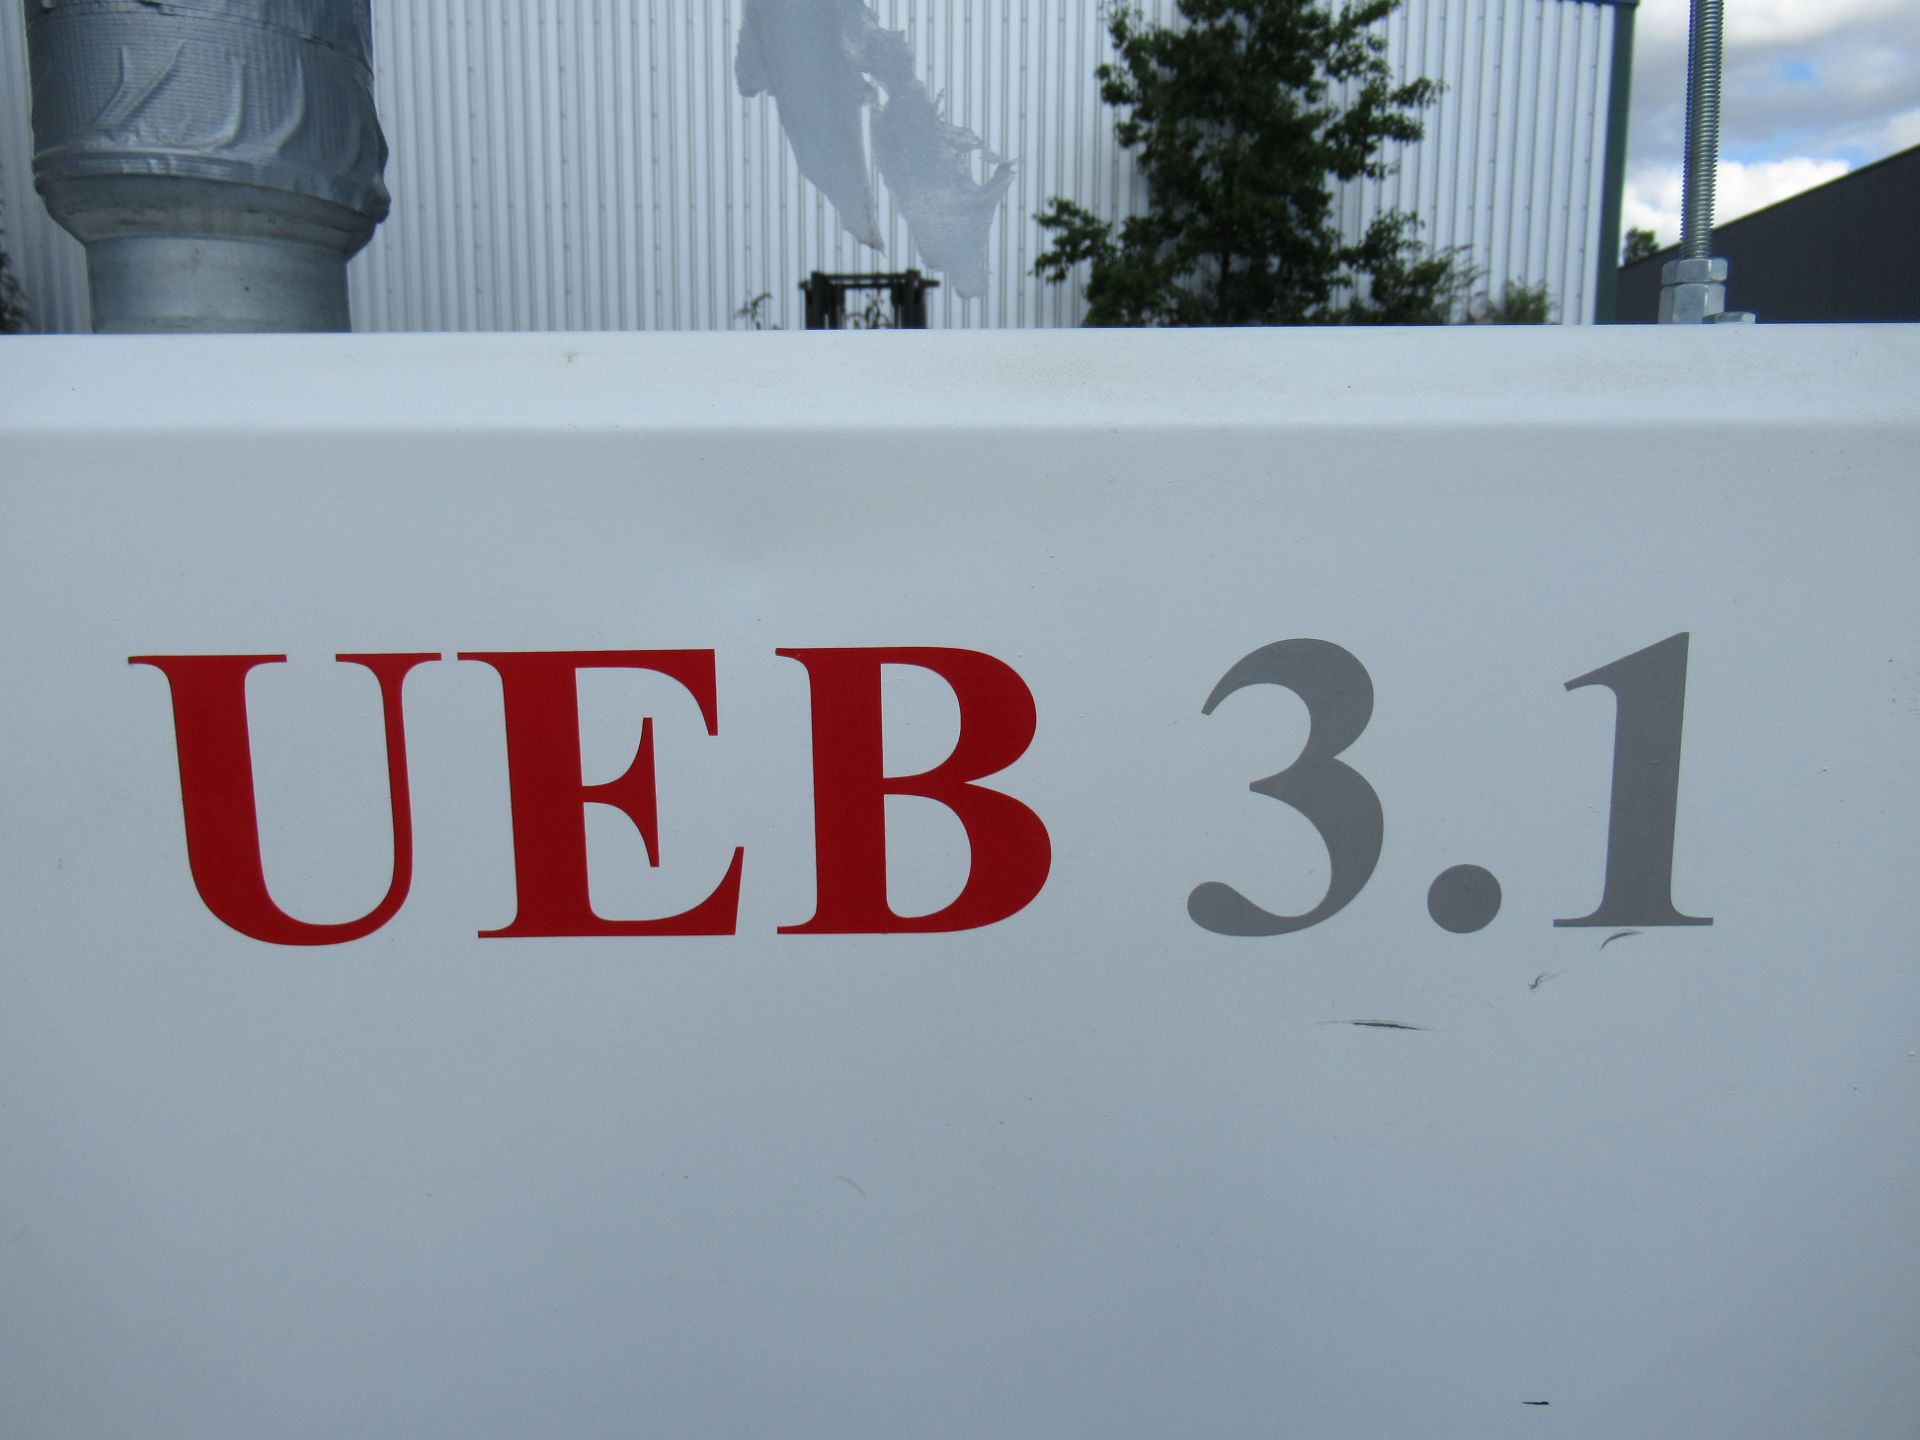 Umaboy Automatic Edgebander UEB3.1. - Image 13 of 13